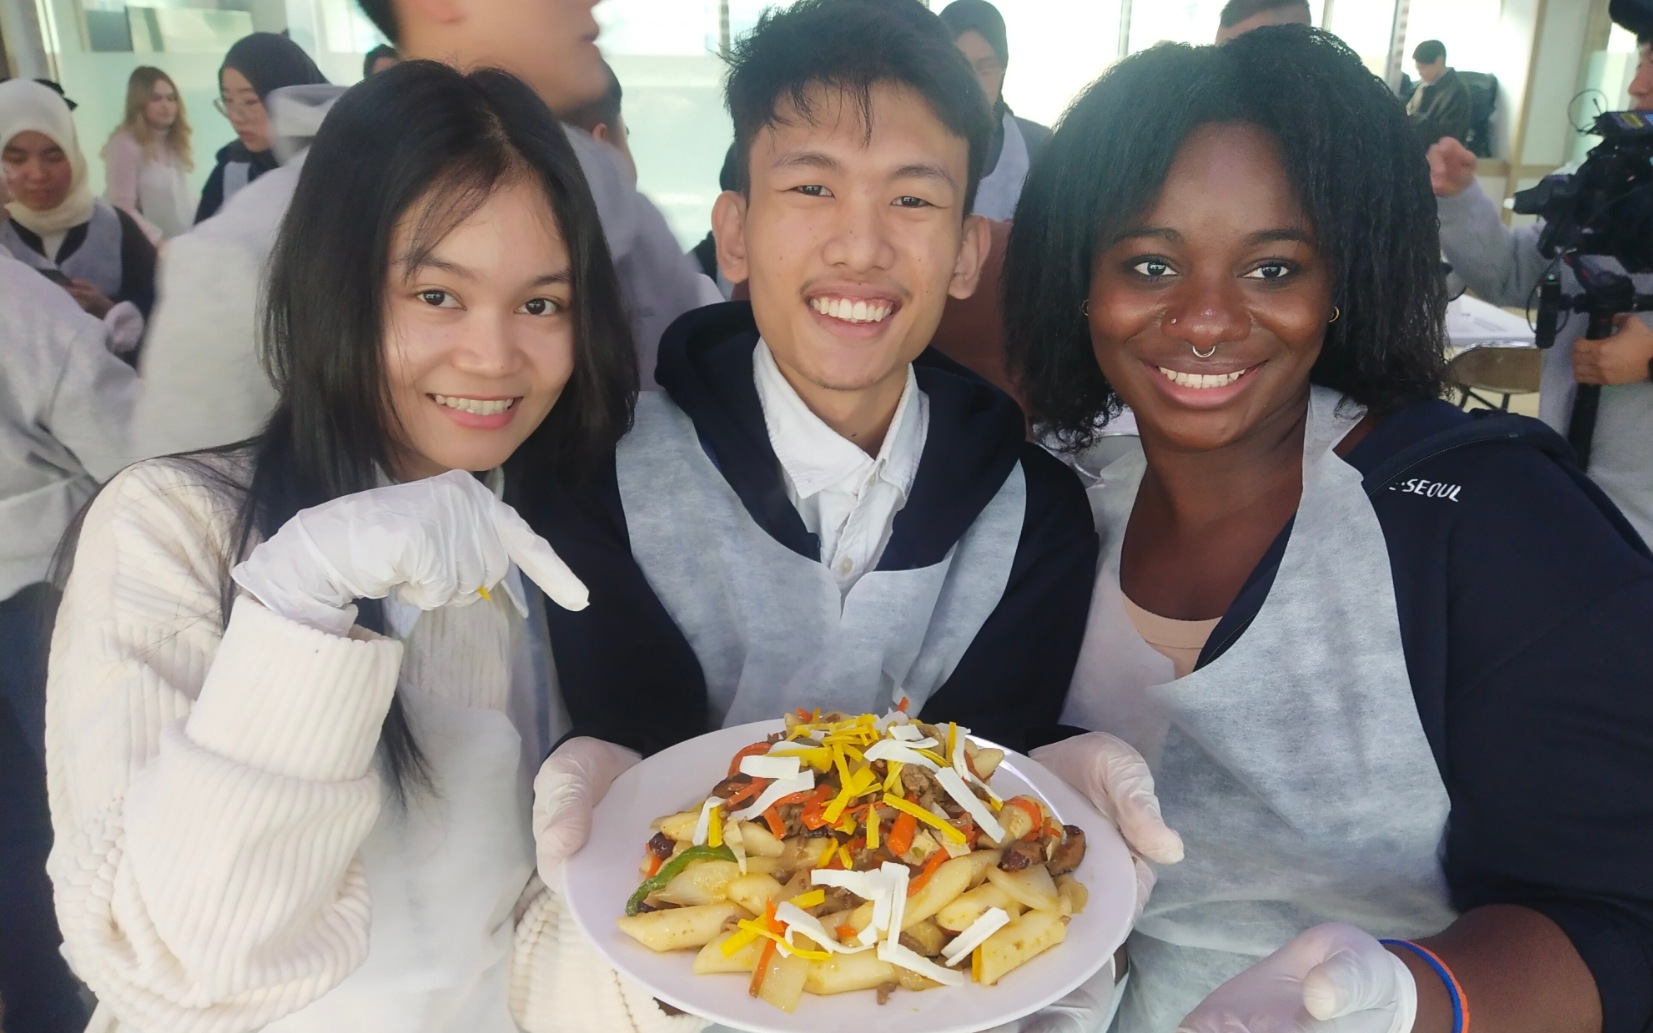 캠프 참가자들은 한국의 보물 같은 요리를 경험합니다.  (존 악셀 오렌시아)